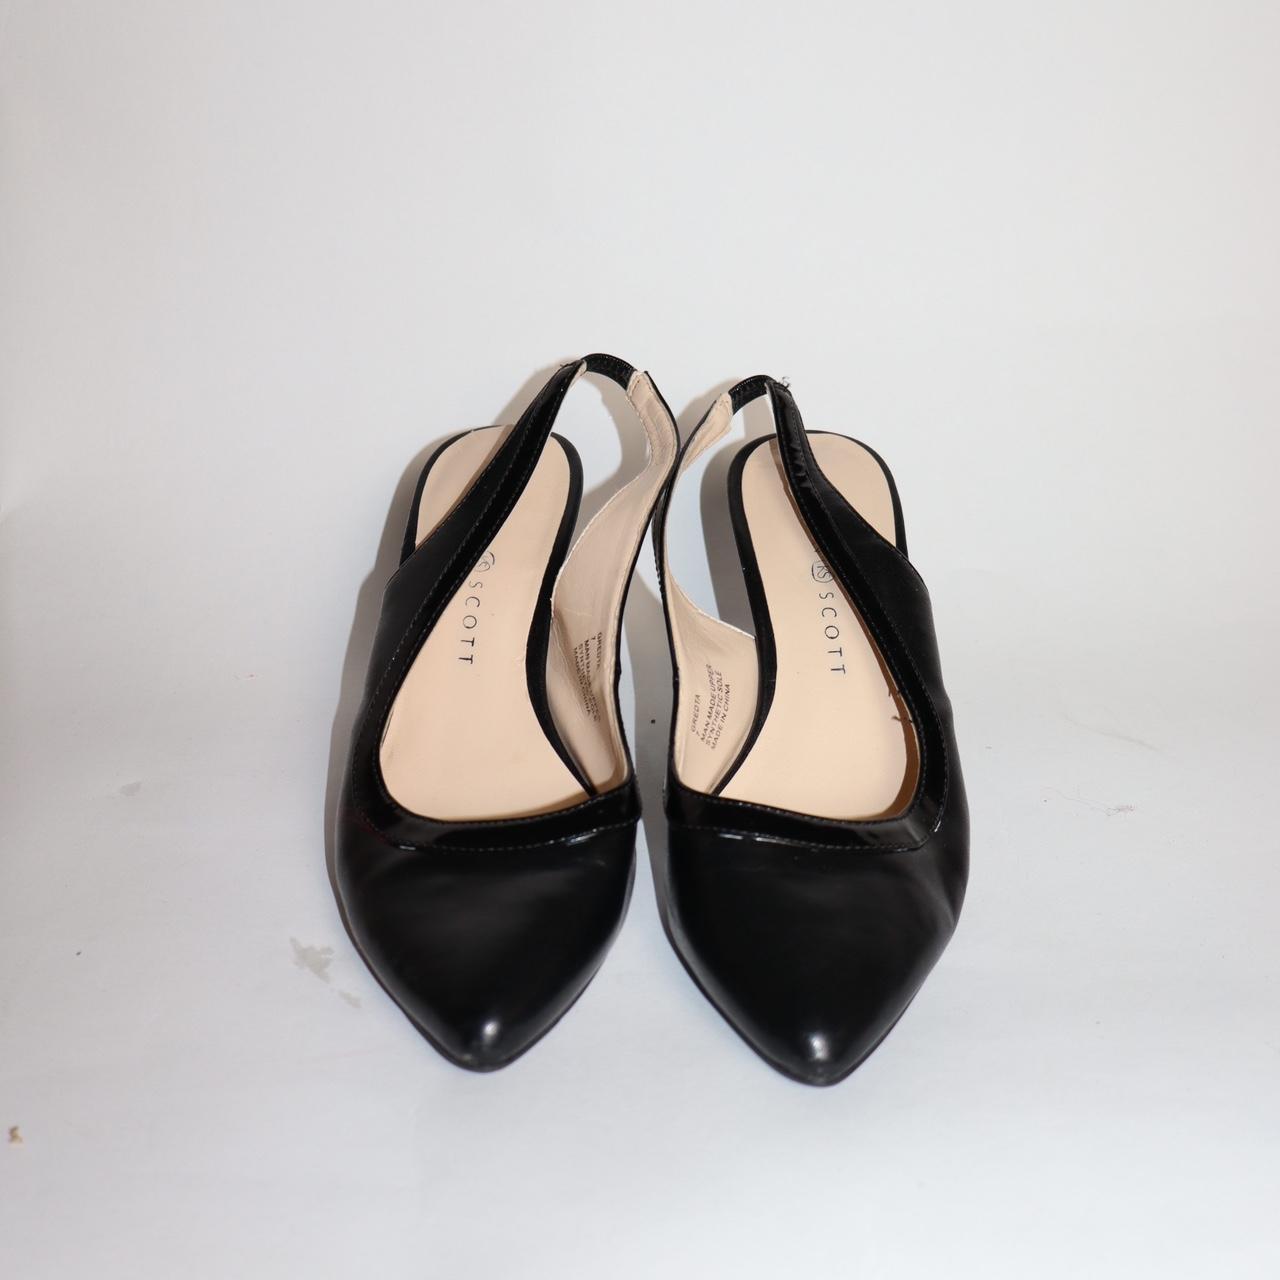 Black kitten heels, good condition! - Depop